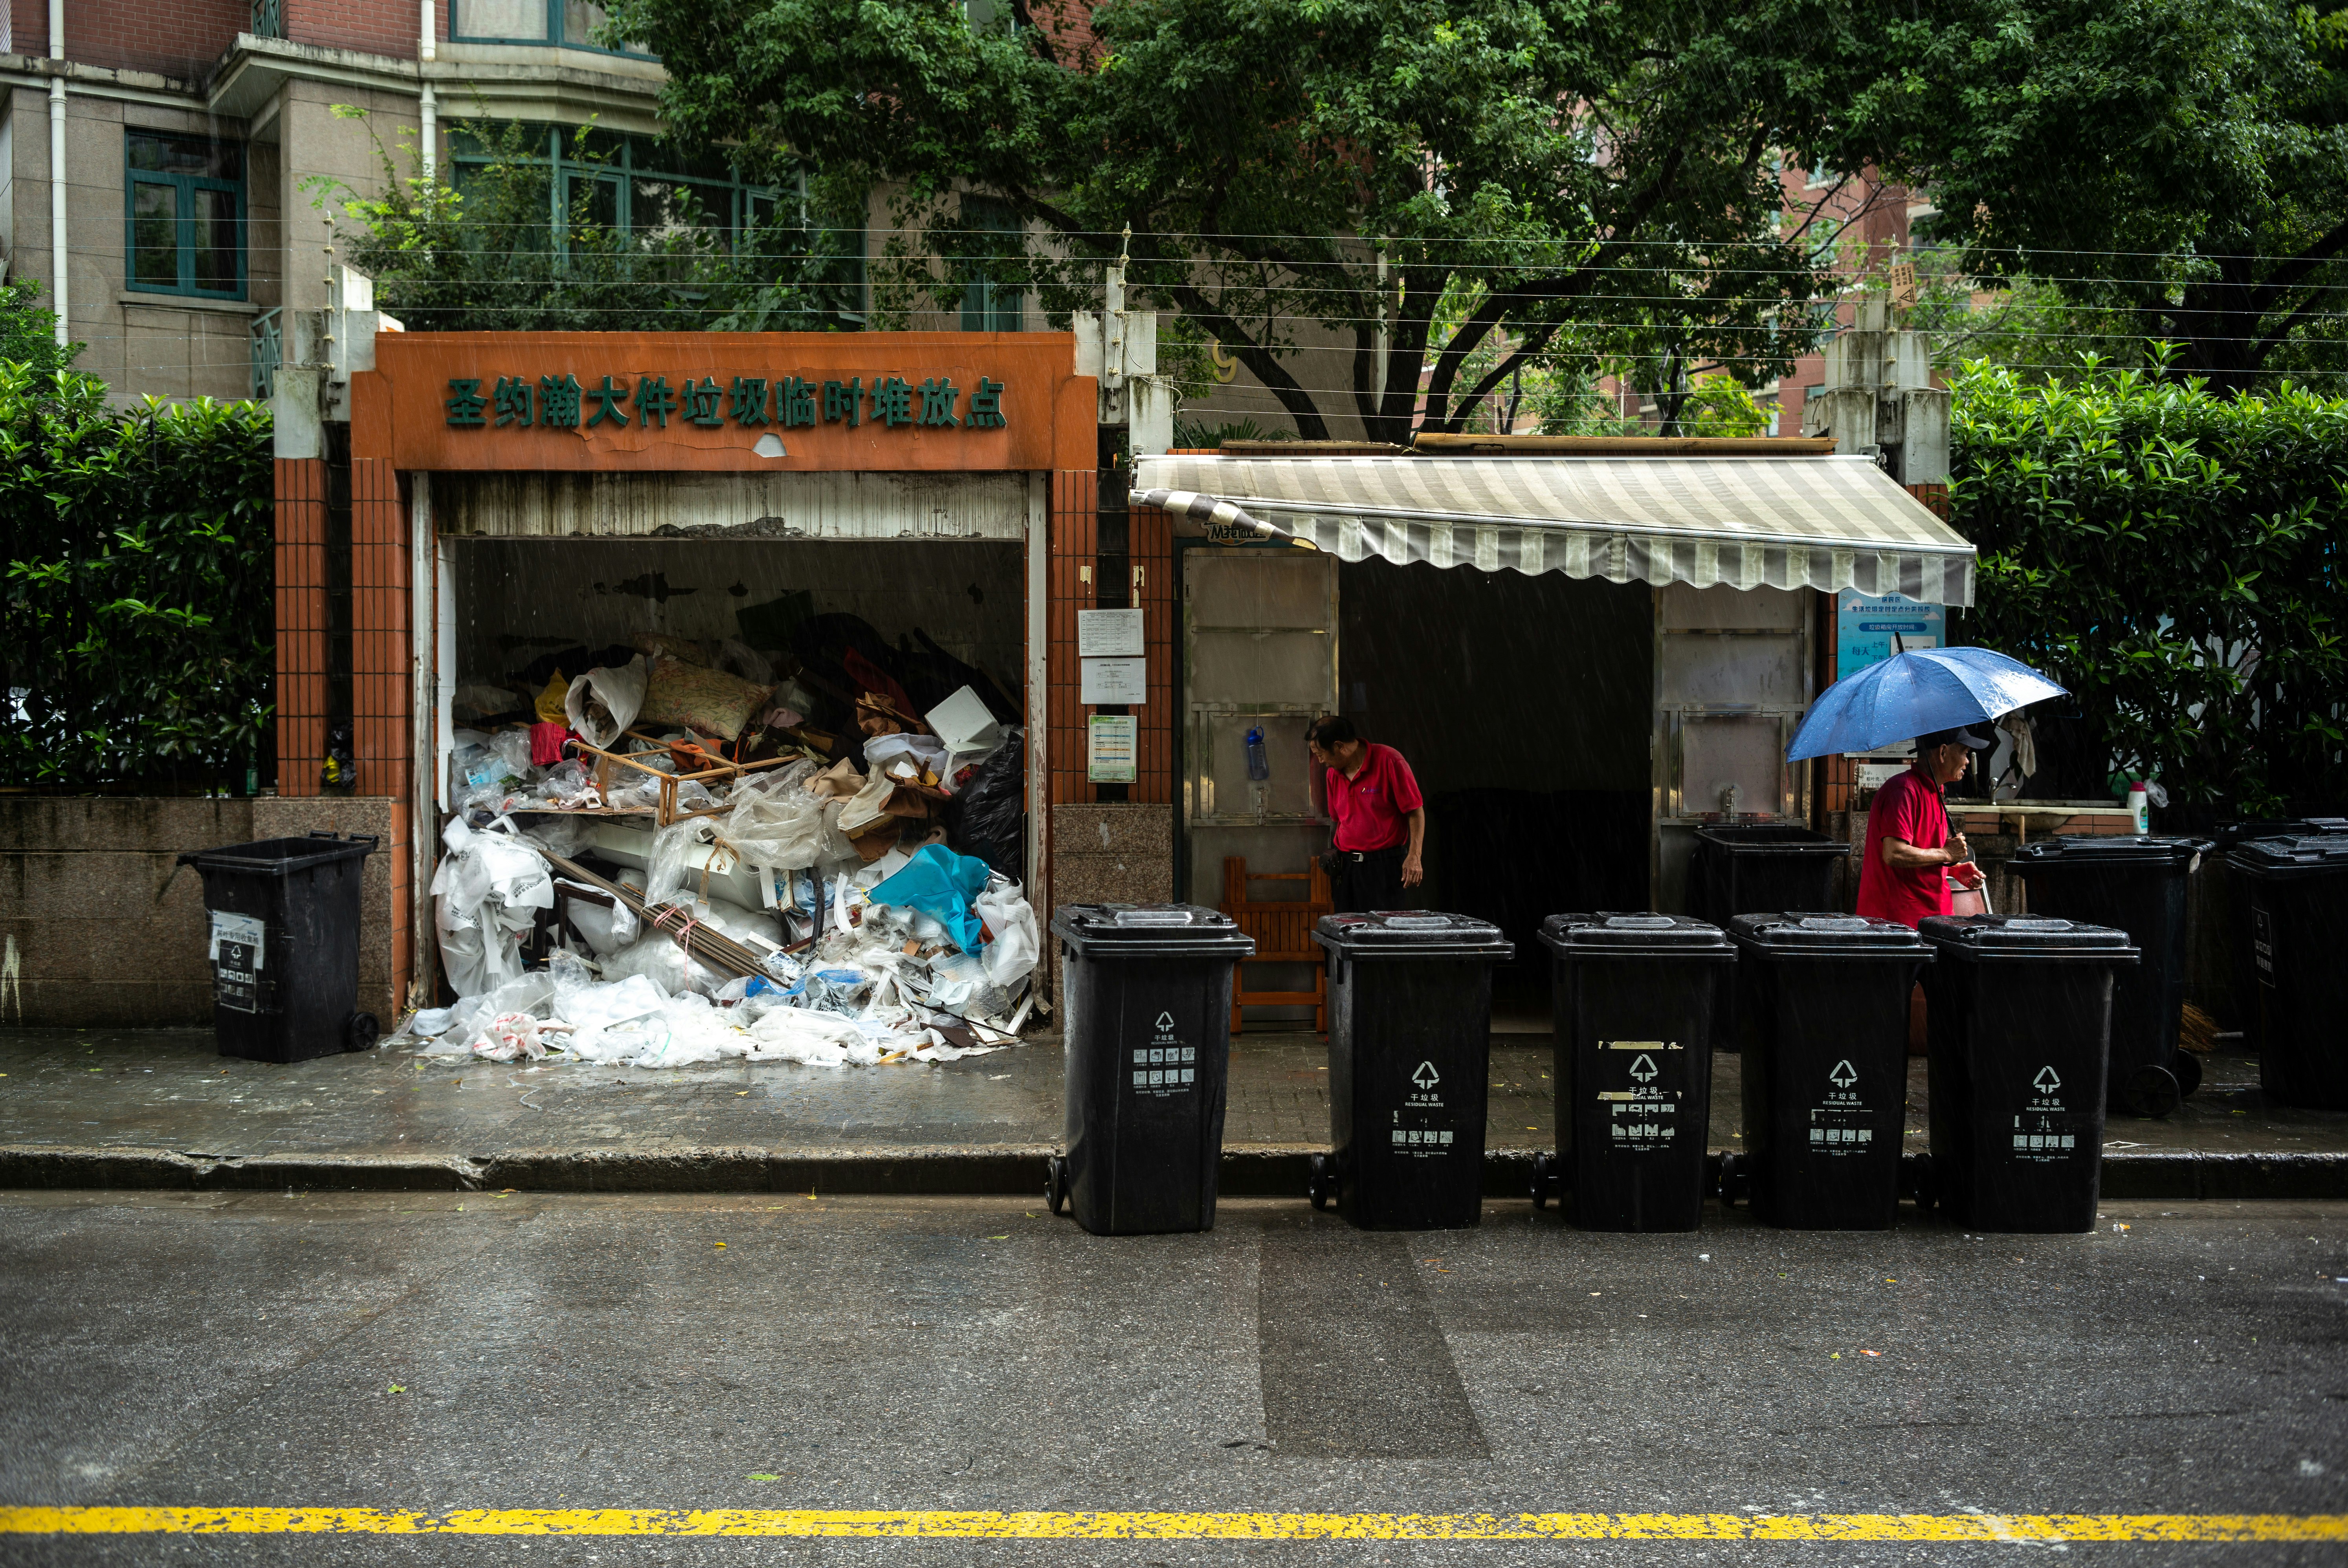 garbage on the street during daytime